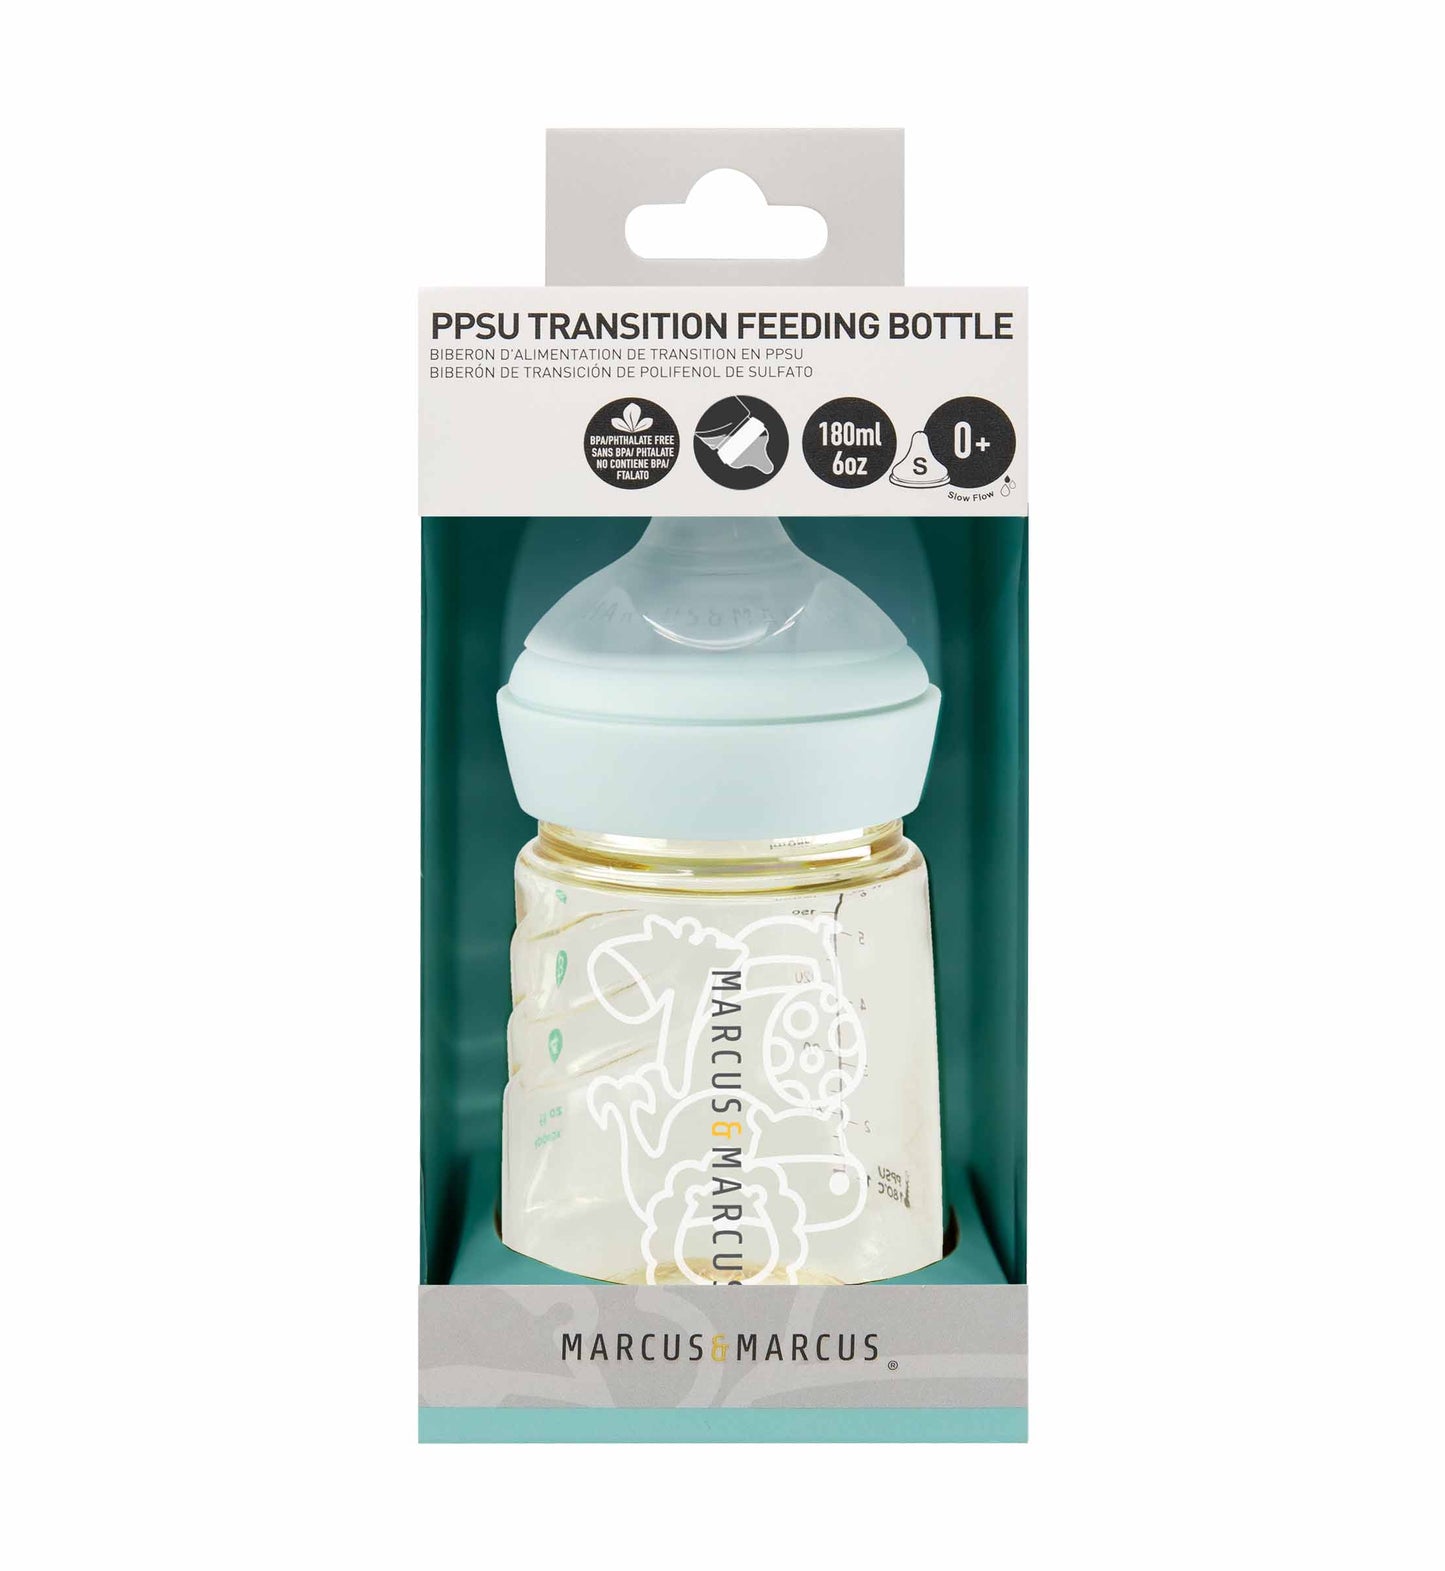 PPSU Transition Feeding Bottle (180ml) – new